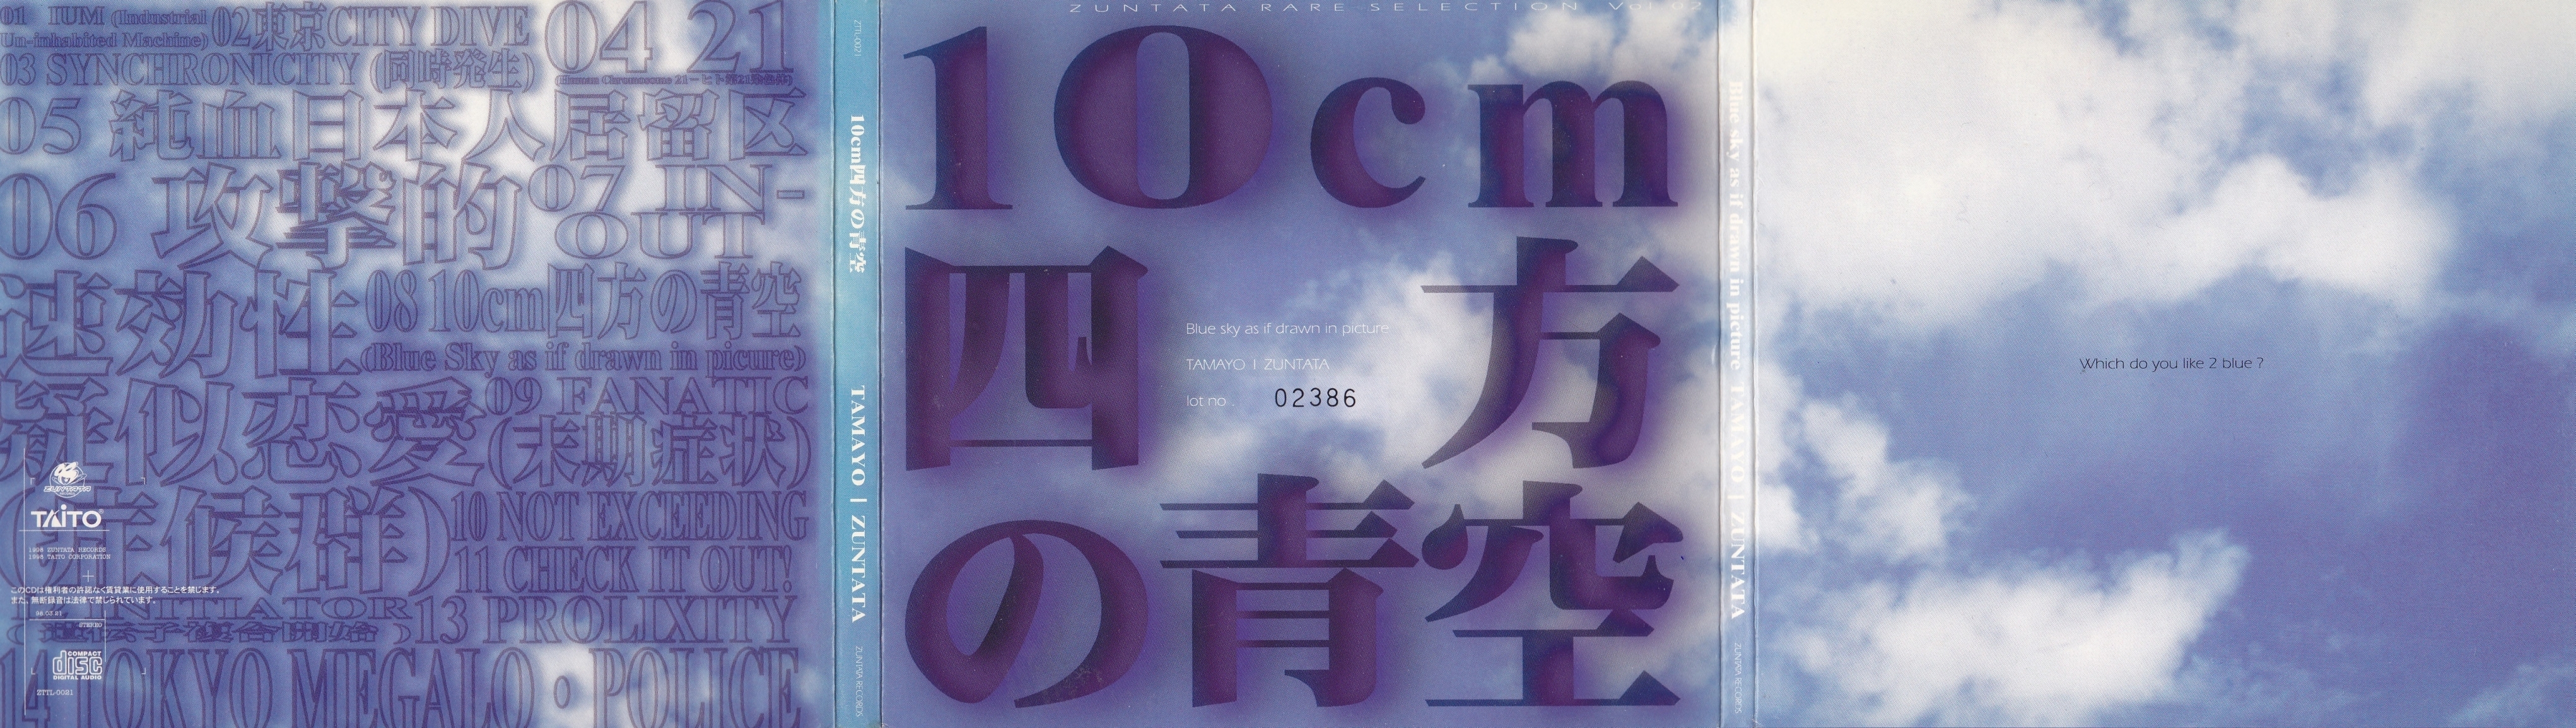 ZUNTATA RARE SELECTION Vol.2 10cm Shihou no Aozora (1998) MP3 - Download ZUNTATA  RARE SELECTION Vol.2 10cm Shihou no Aozora (1998) Soundtracks for FREE!